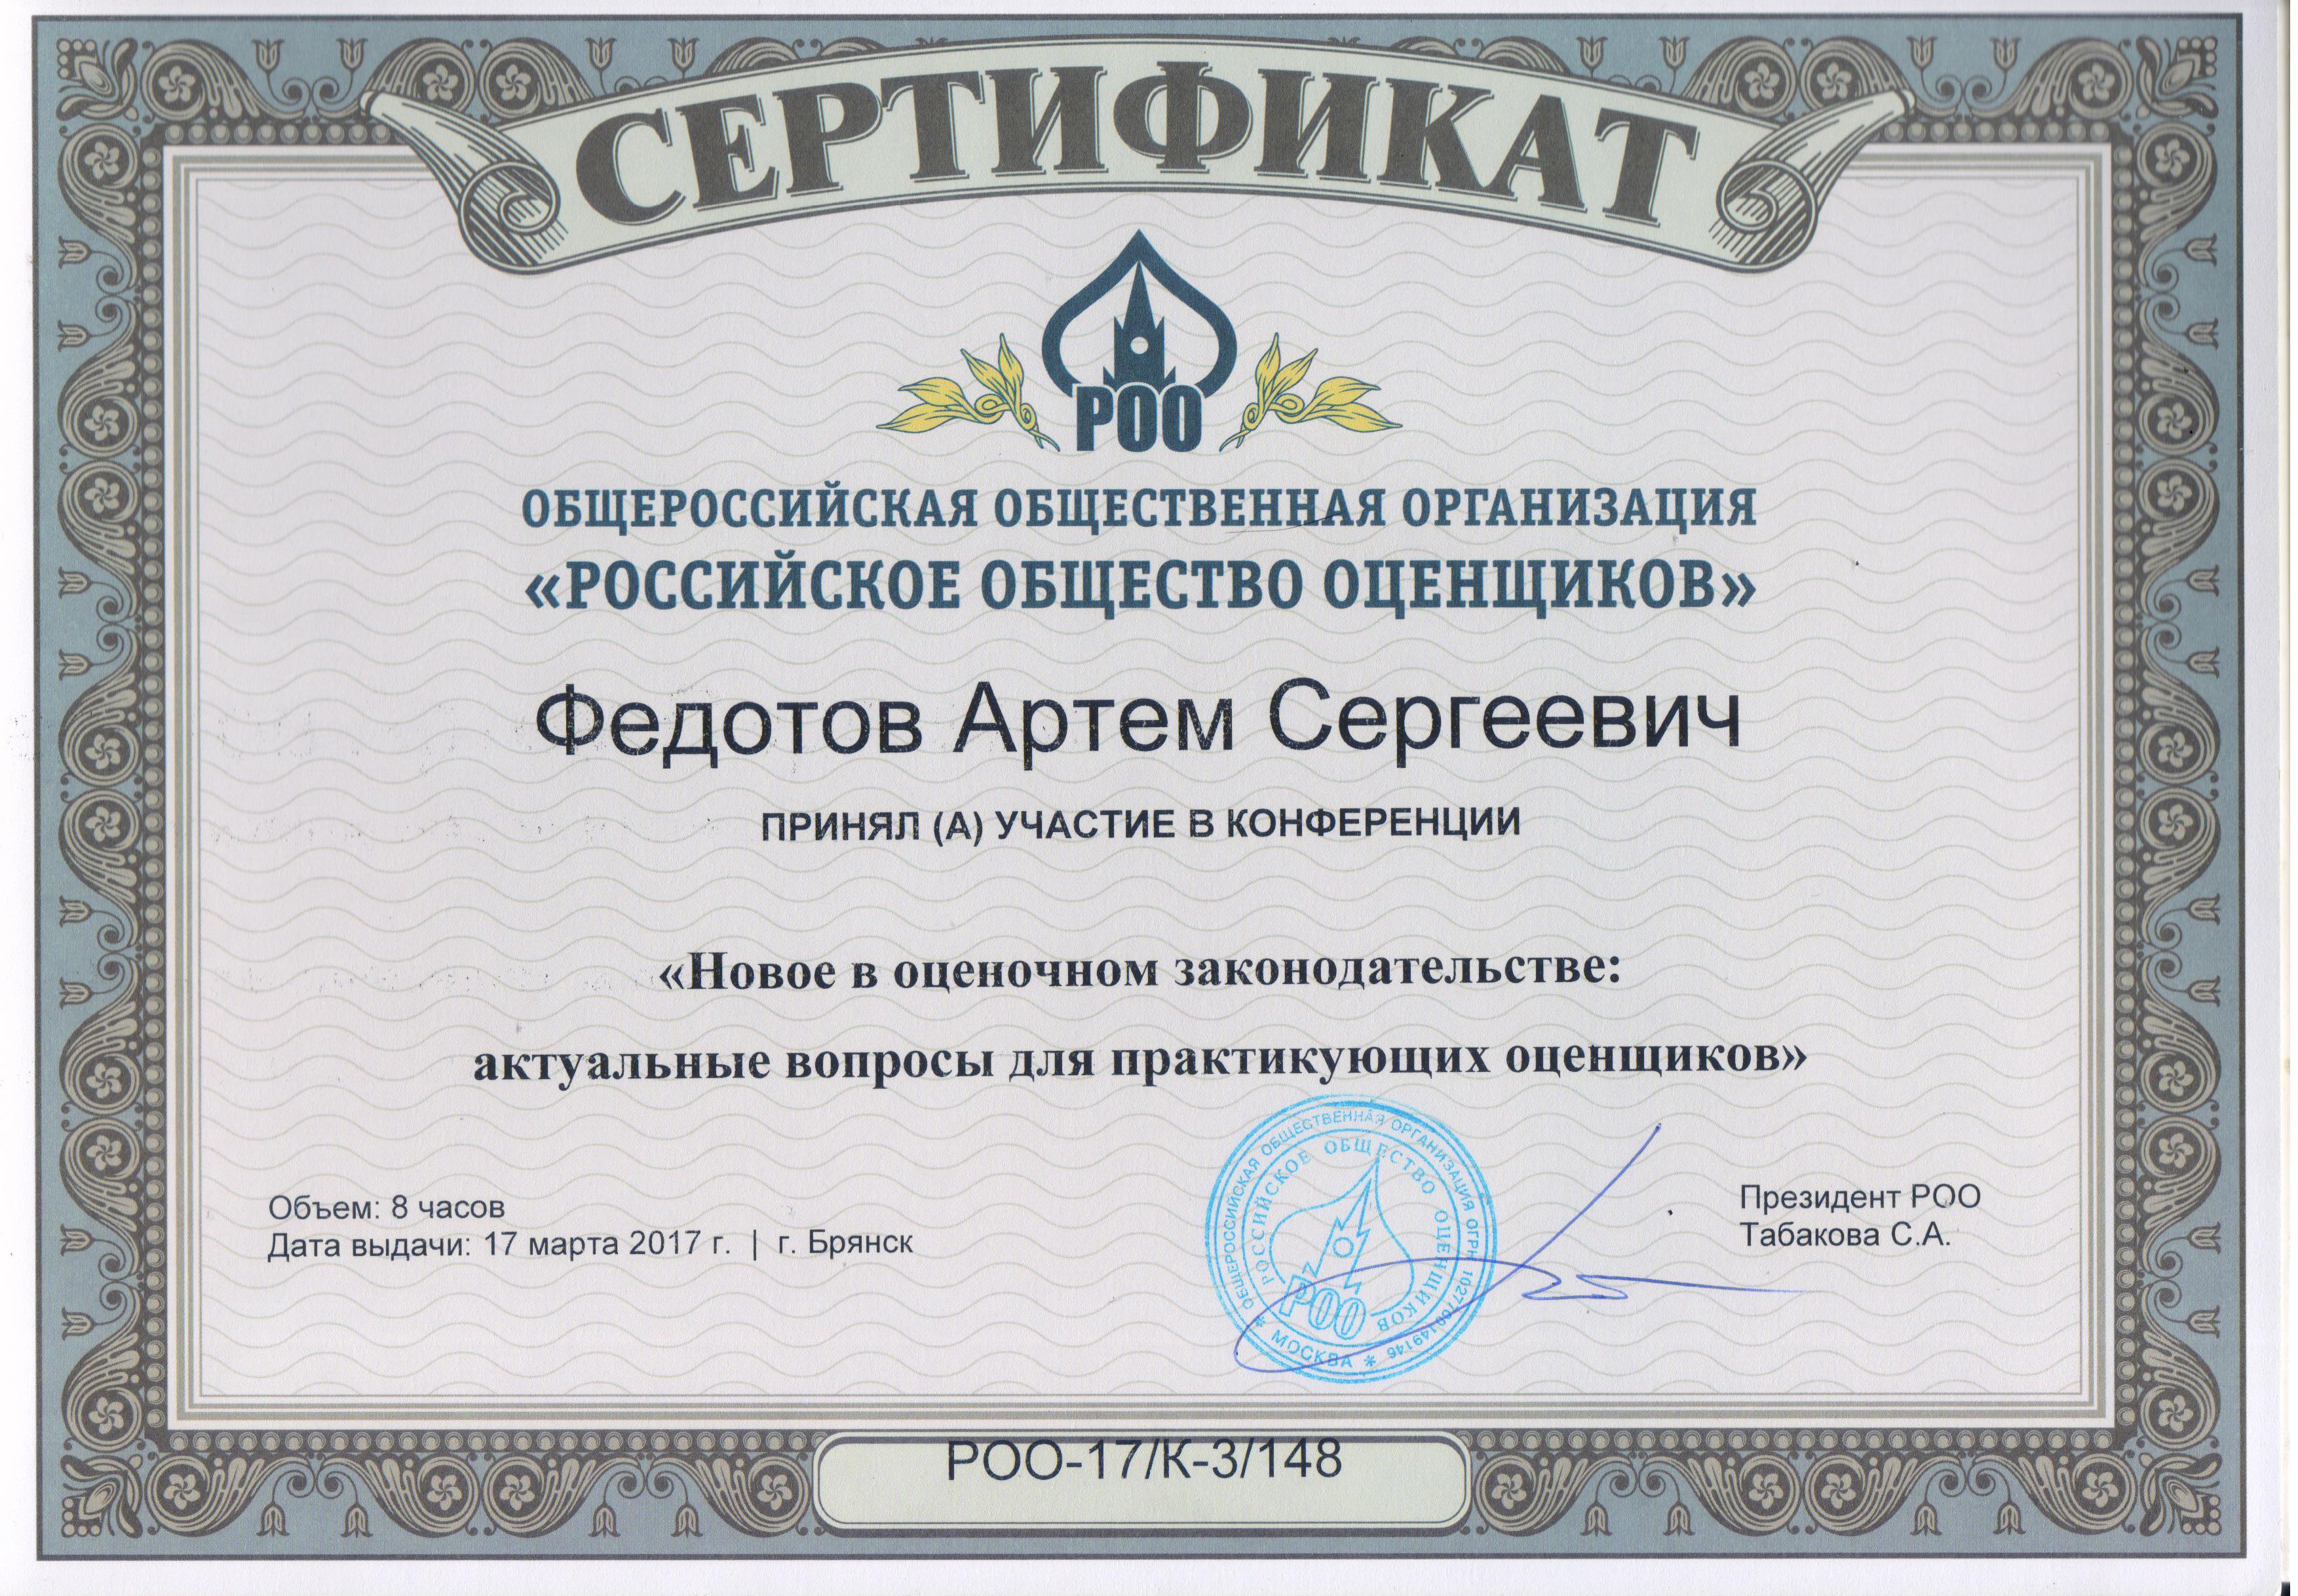 Сертификат. Новое в оценочном законодательстве